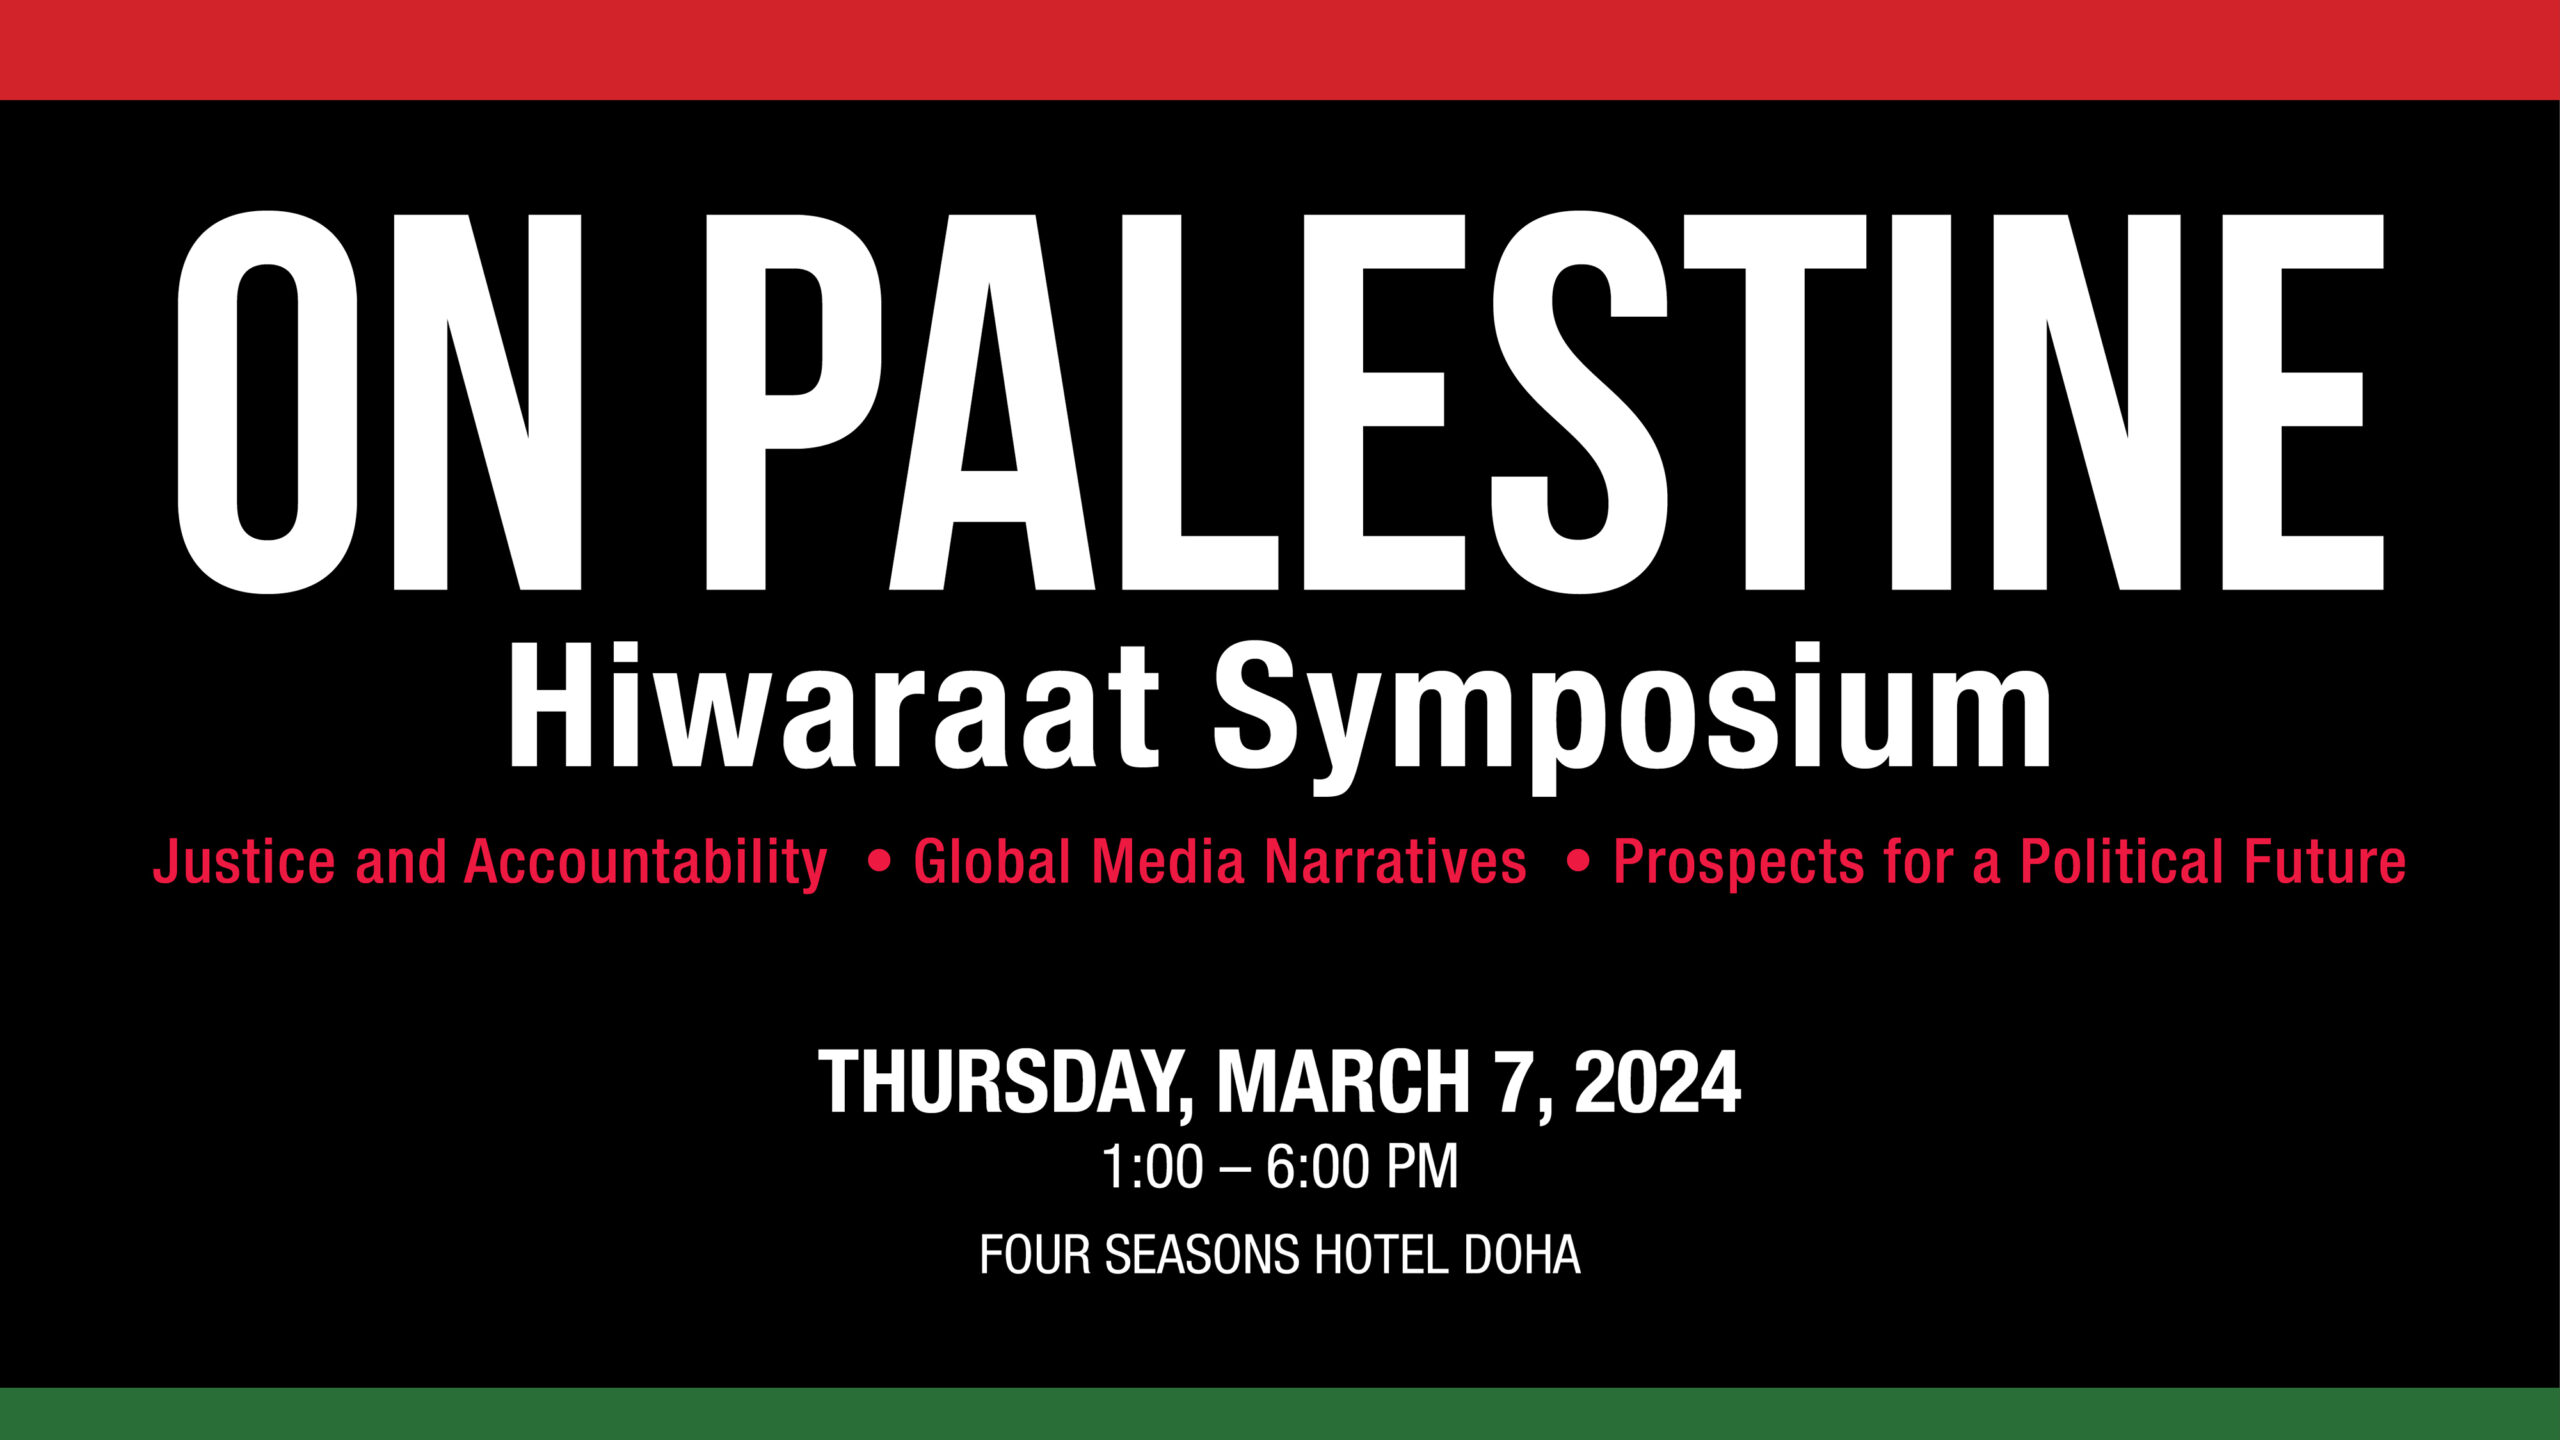 Hiwaraat Symposium on Palestine, March 7, 2024